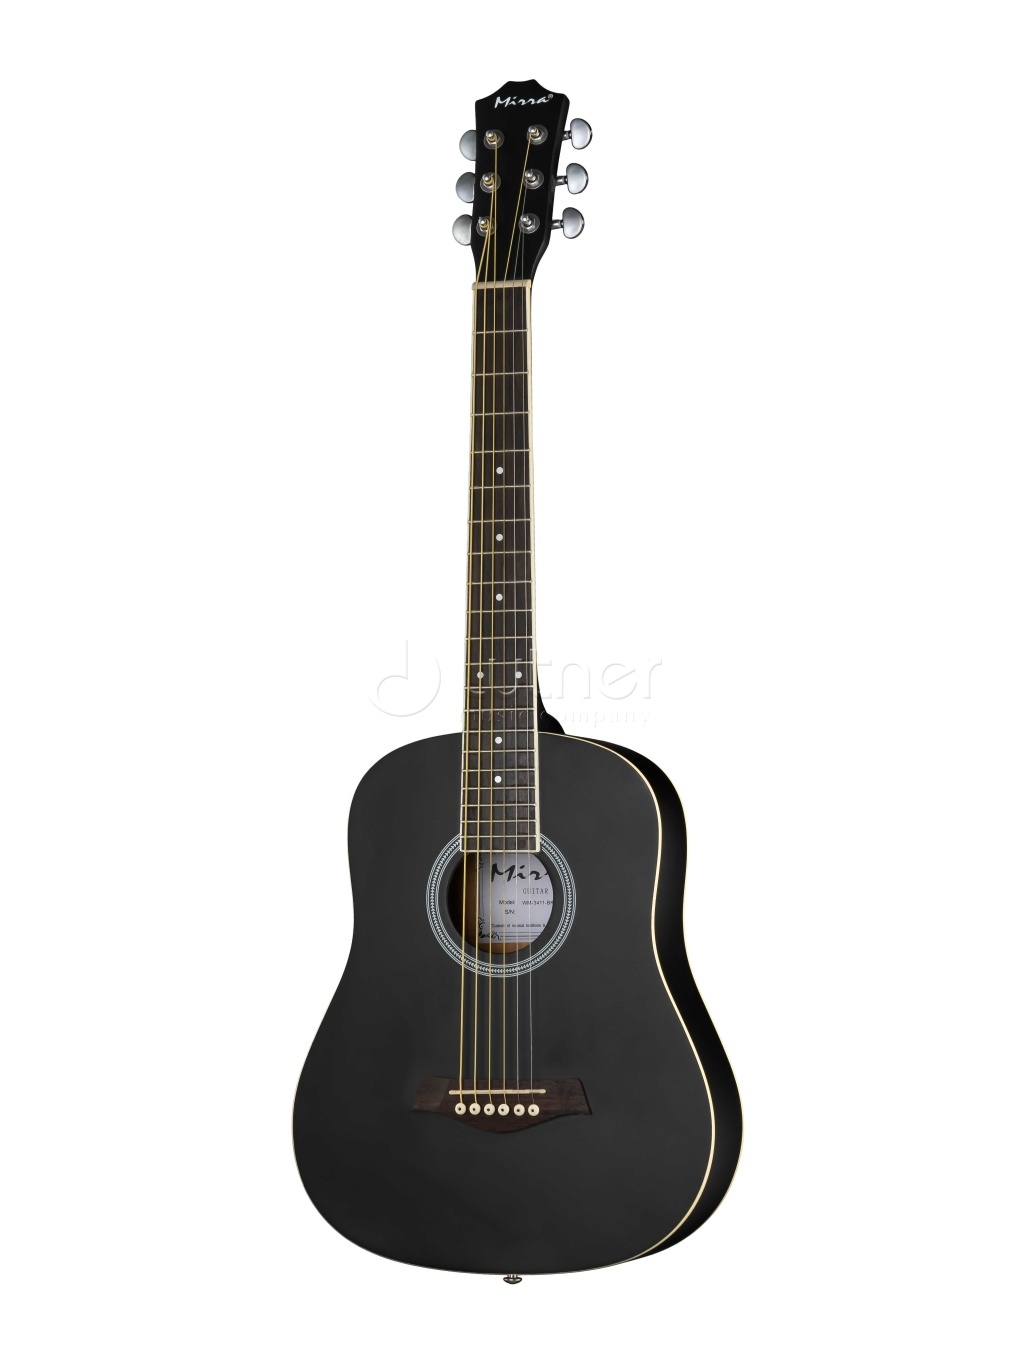 акустические гитары caraya f64012 bs Акустические гитары Mirra WM-3411-BK 34